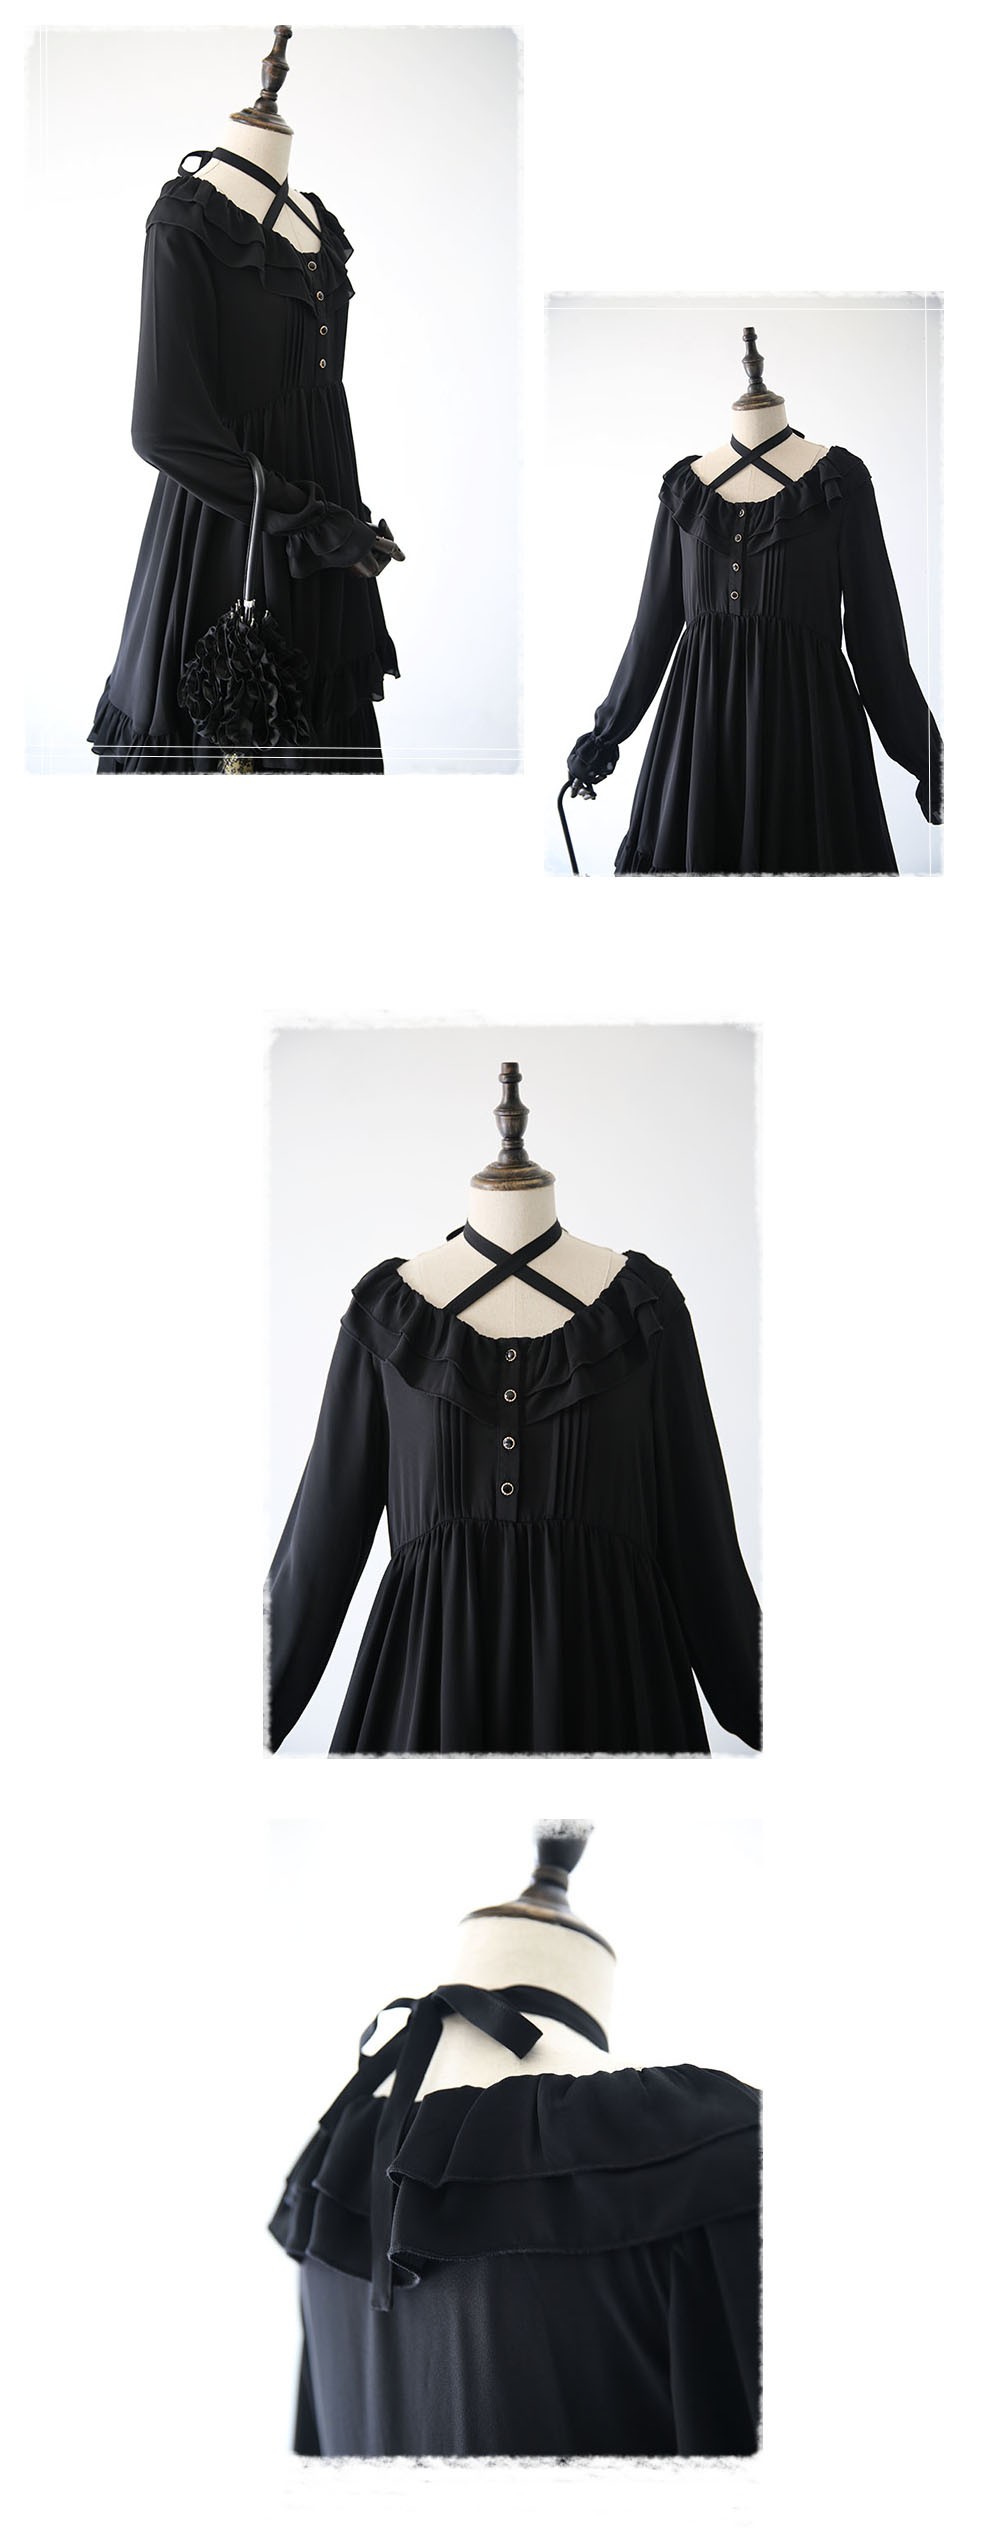 Lolita-Style-Black-Chiffon-Dress-Vintage-Retro-Royal--Women-Princess-Chiffon-Dress-Ruffle-Large-Size-32720910236